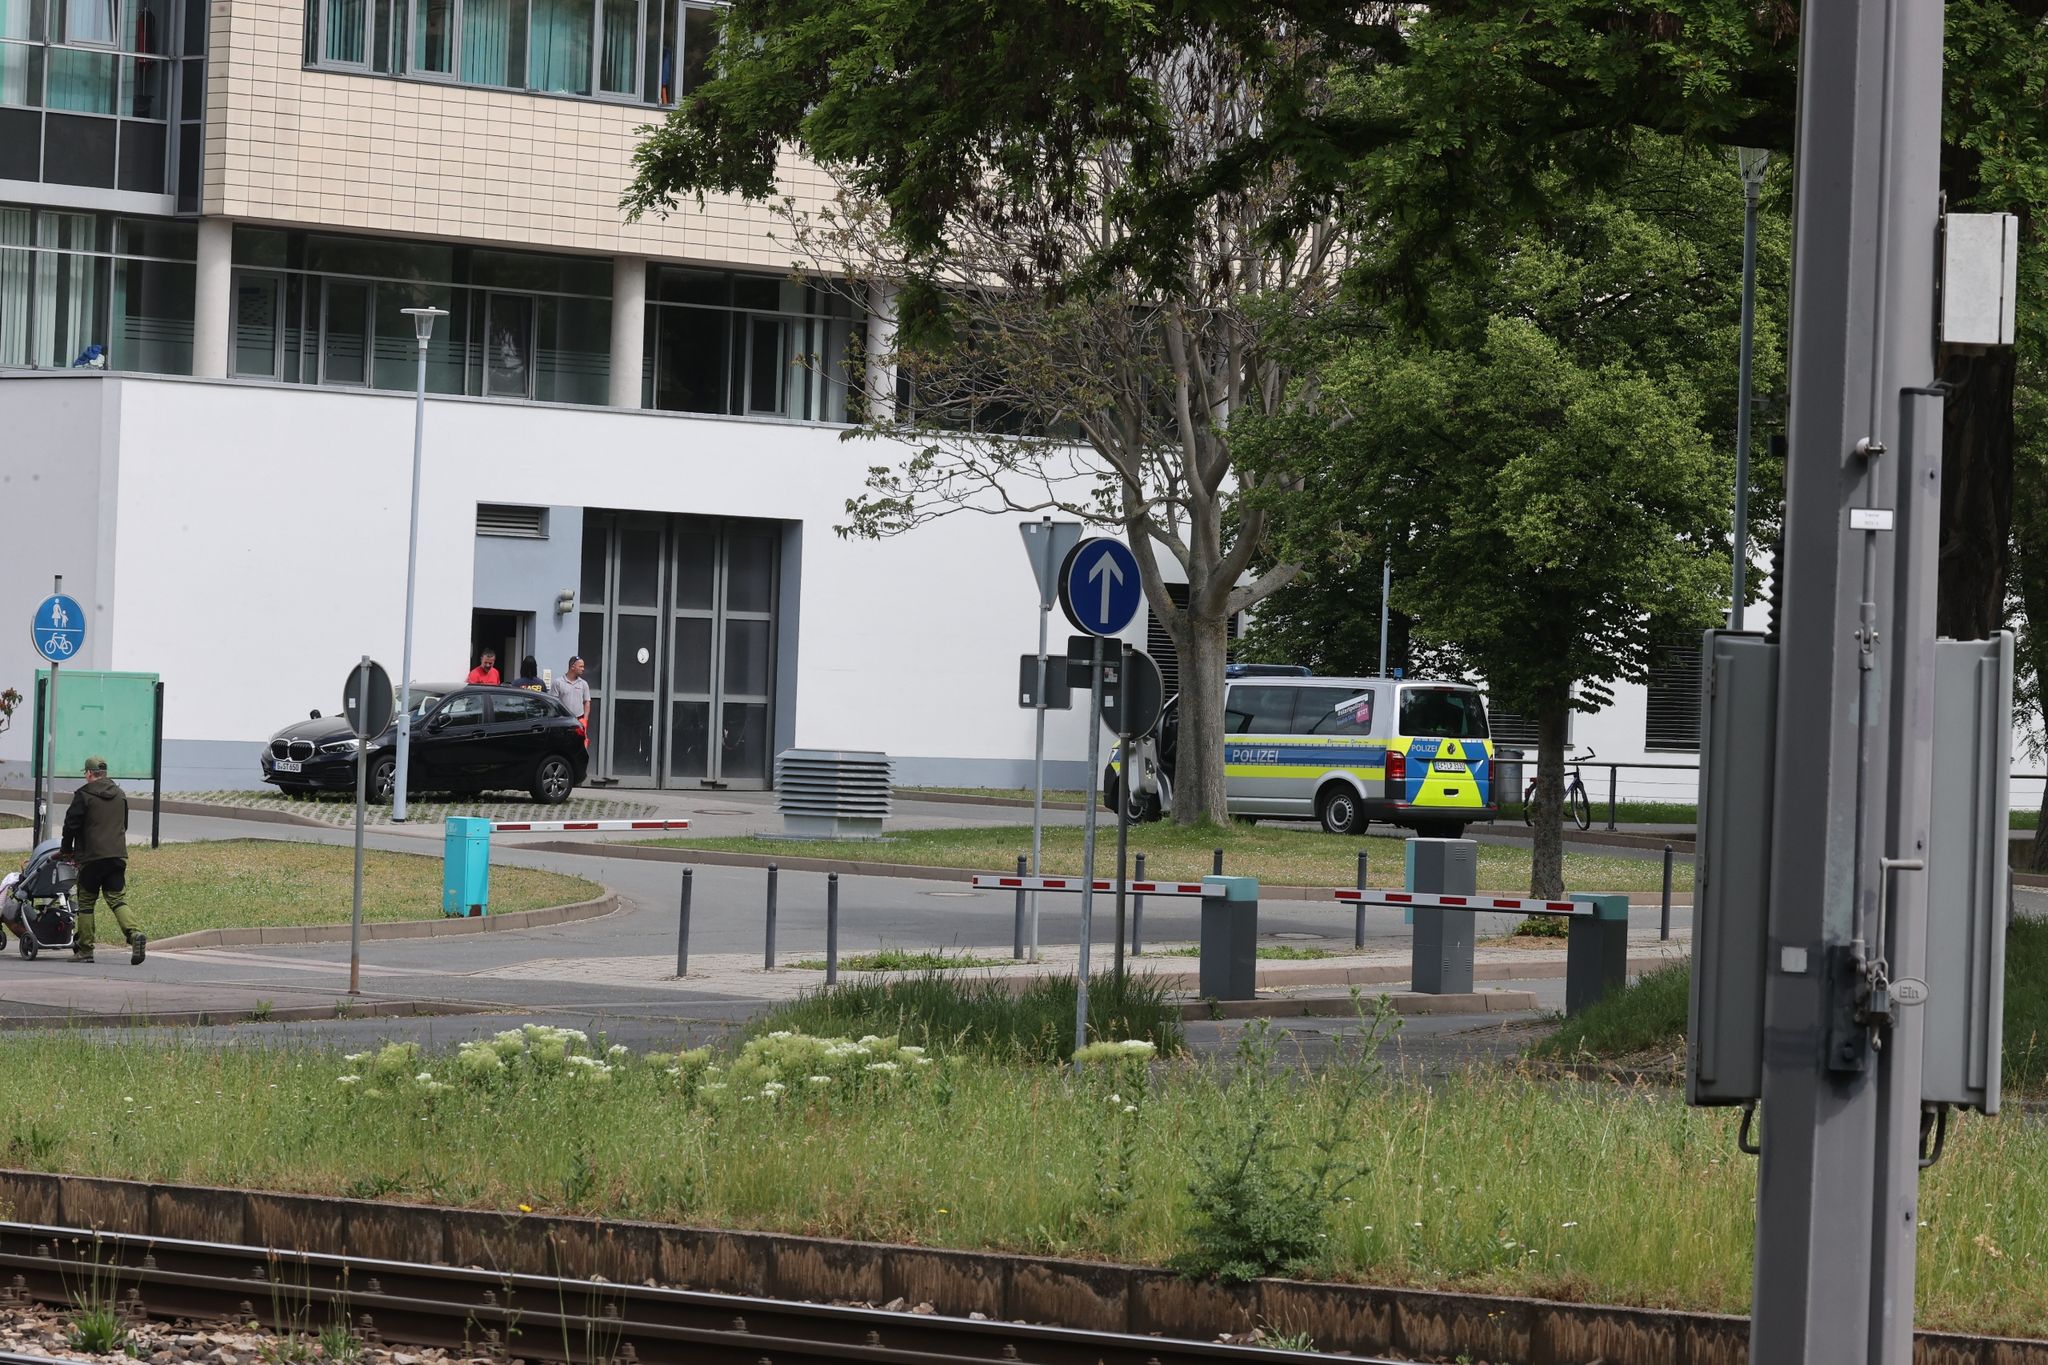 Attentäter von Halle in Erfurter Krankenhaus, lehnt ärztliche Behandlung ab